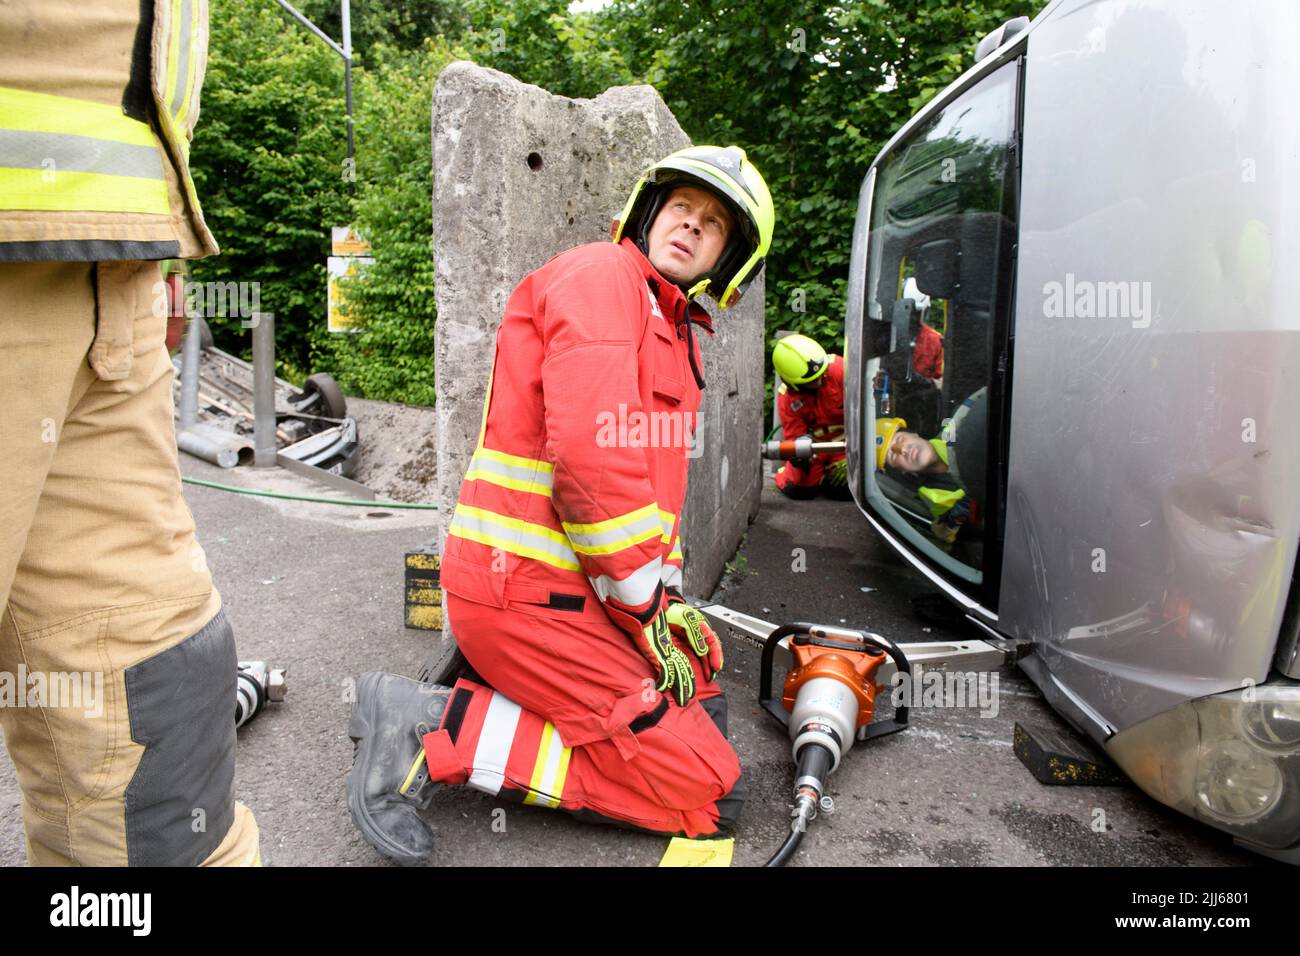 Les pompiers utilisent un équipement spécialisé pour éloigner une voiture contenant des capteurs d'une obstruction au centre de formation Cardiff Gate - les données recueillies seront c Banque D'Images